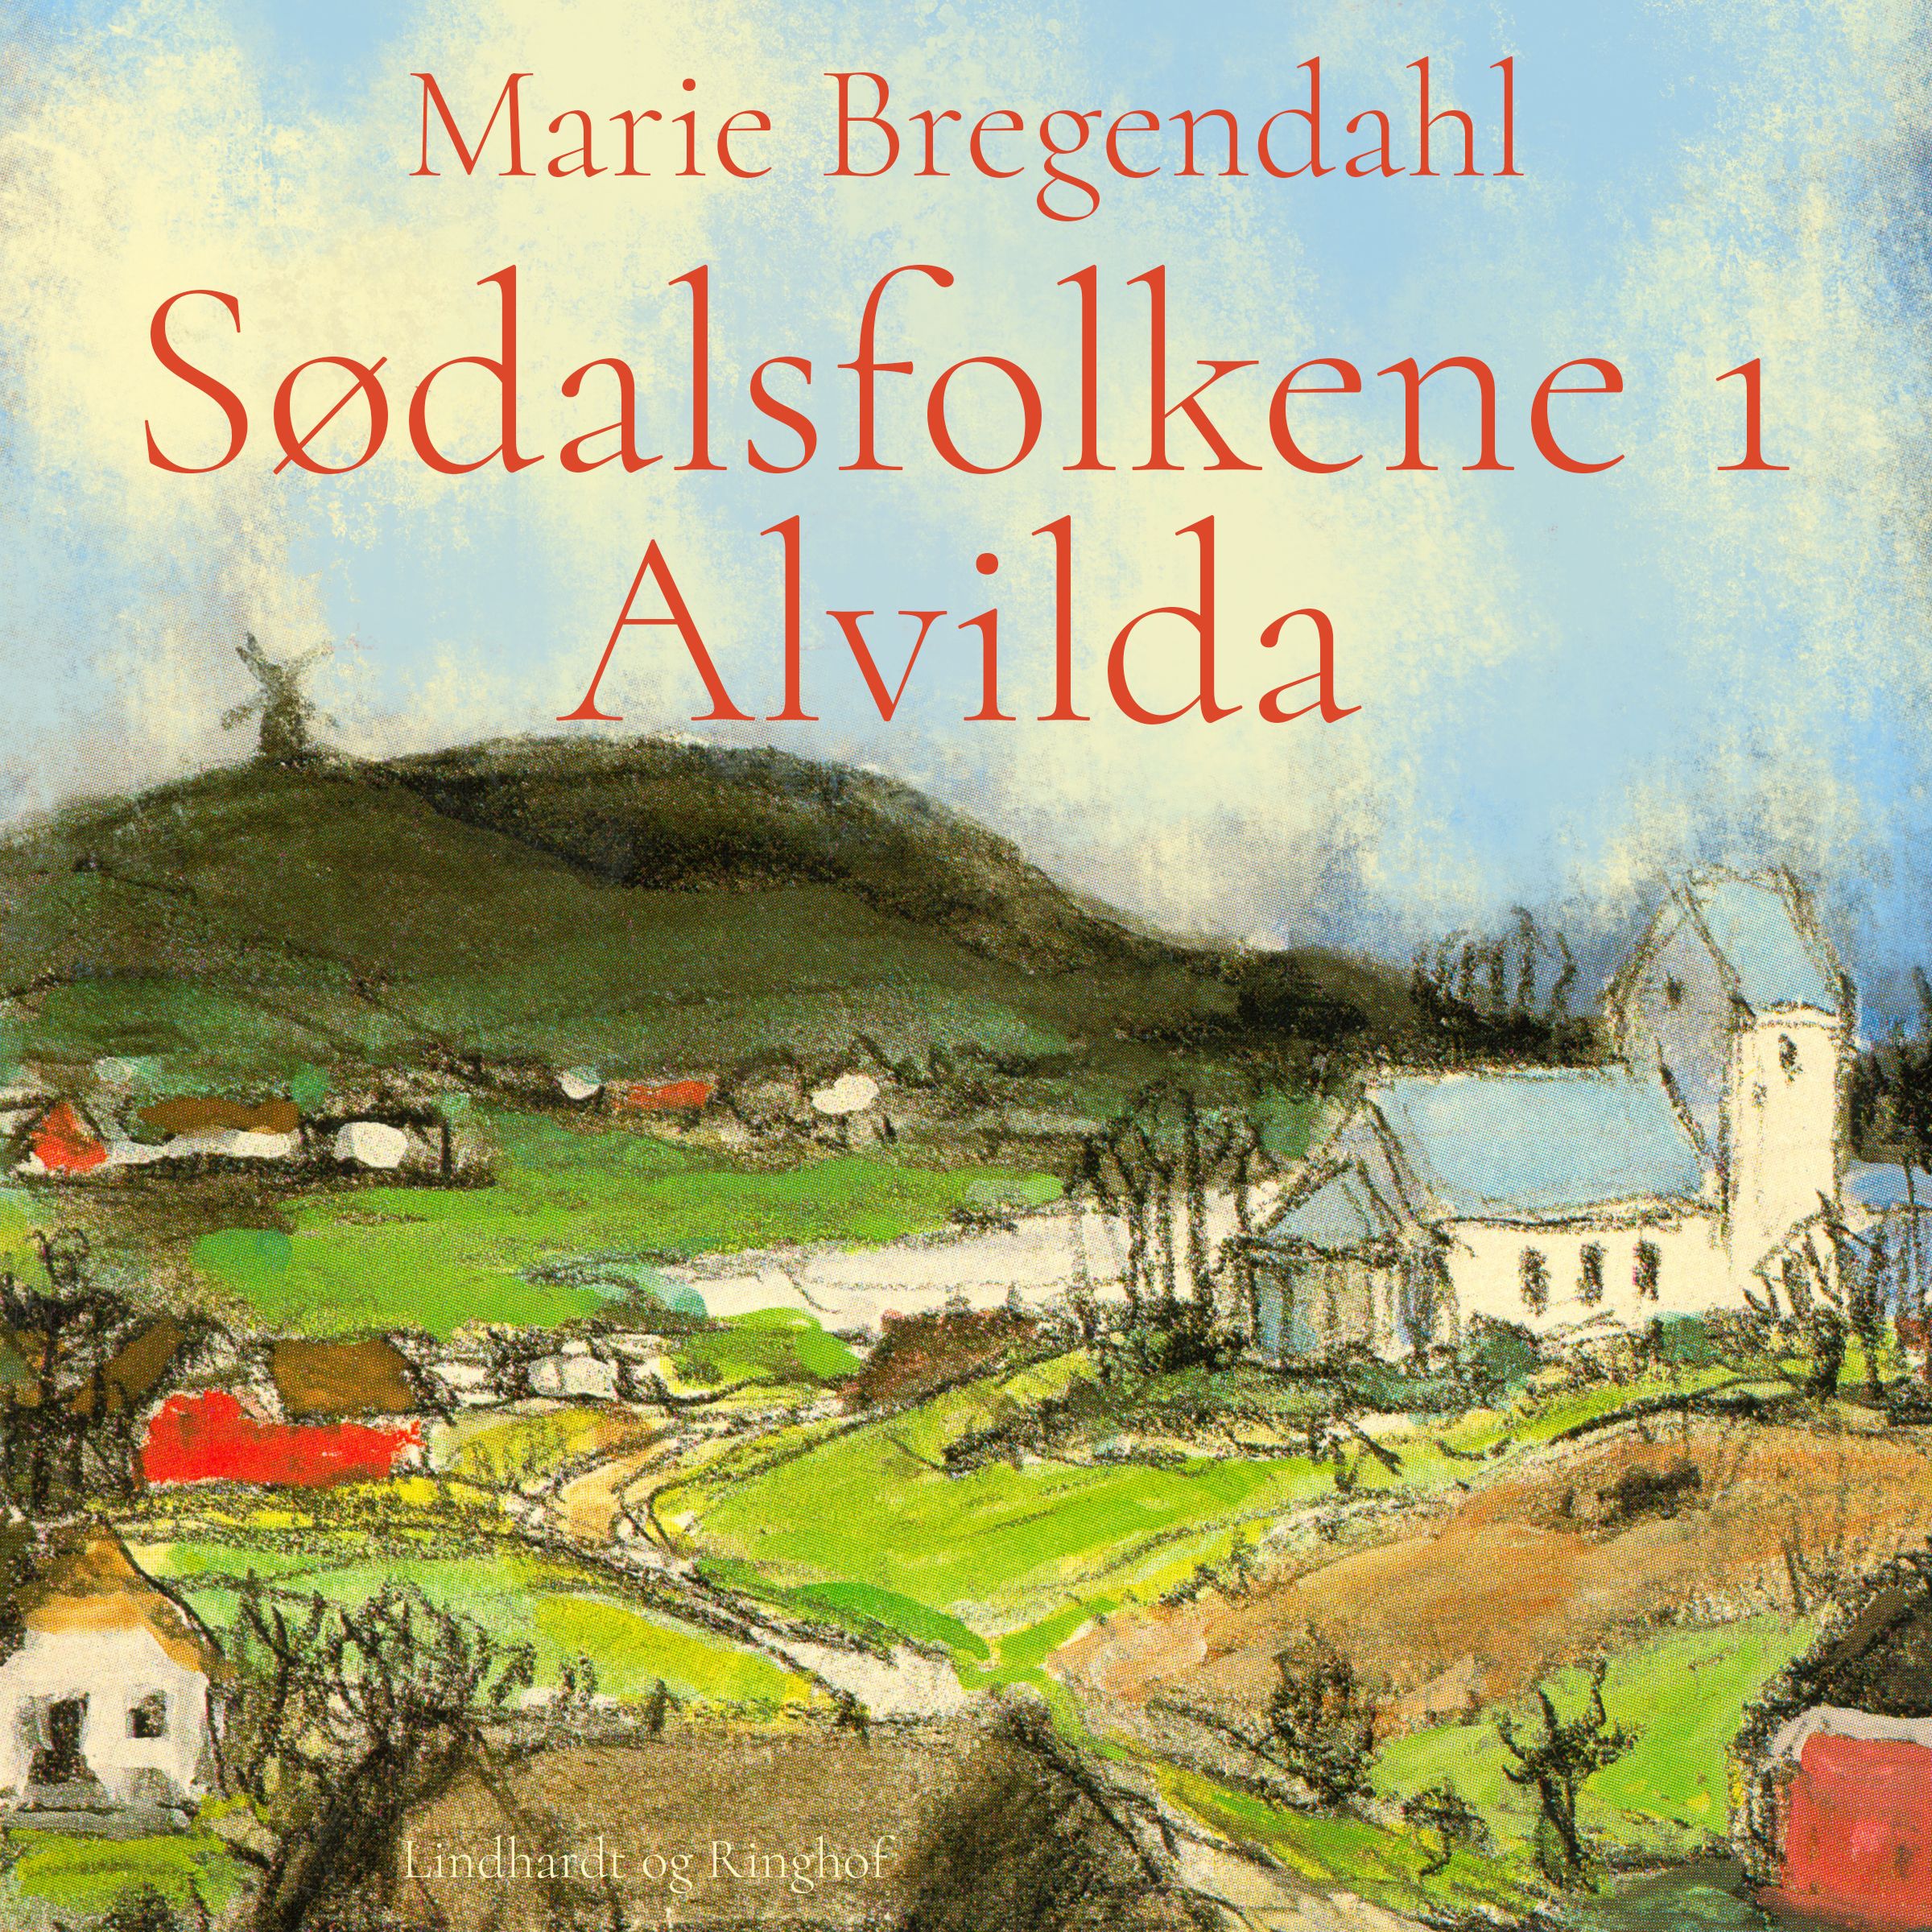 Sødalsfolkene - Alvilda, lydbog af Marie Bregendahl